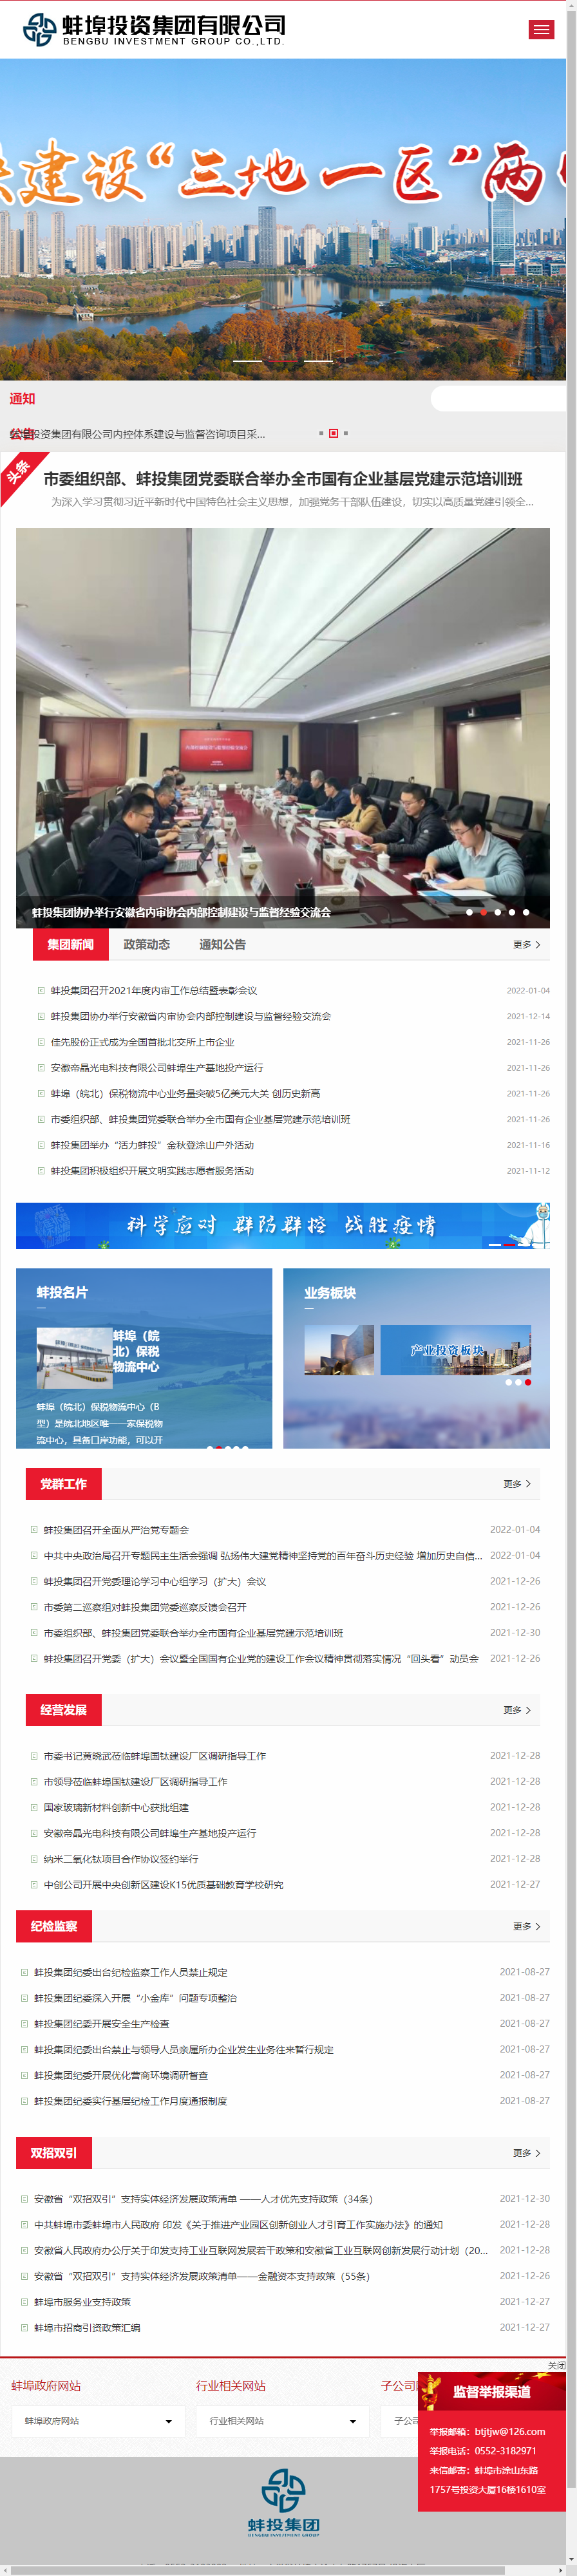 蚌埠投资集团有限公司网站案例